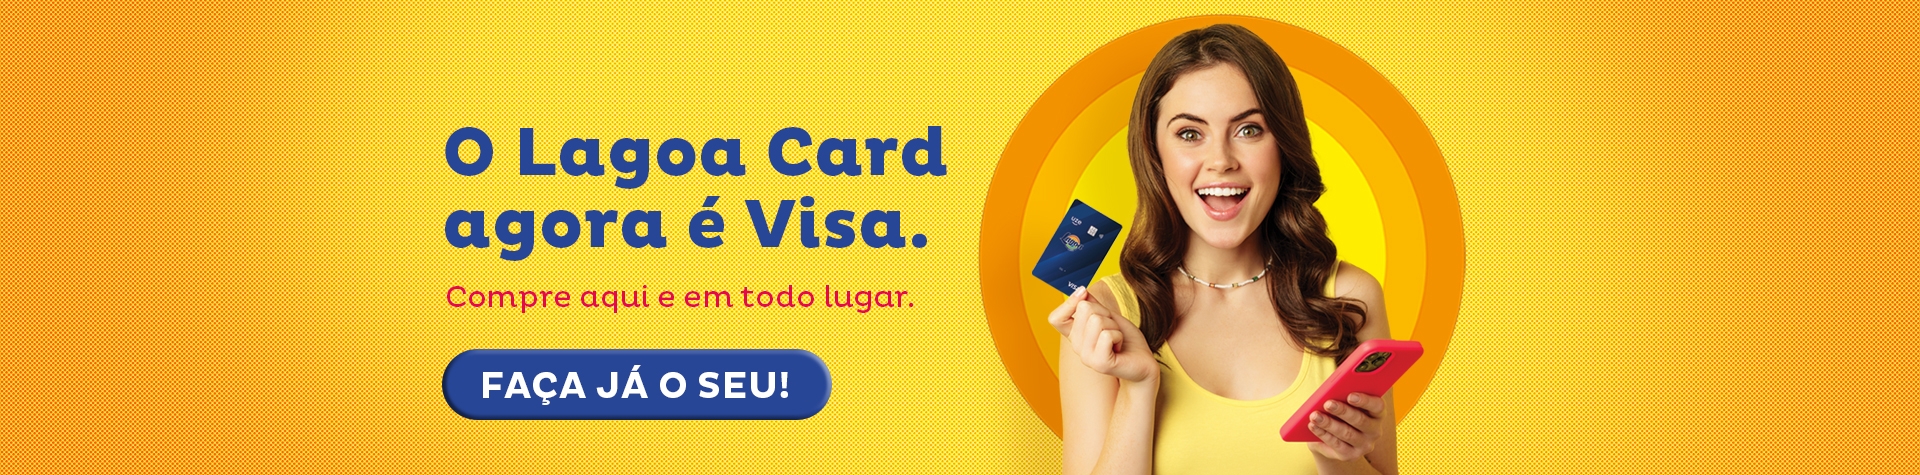 NOVO CARTÃƒO LAGOA CARD